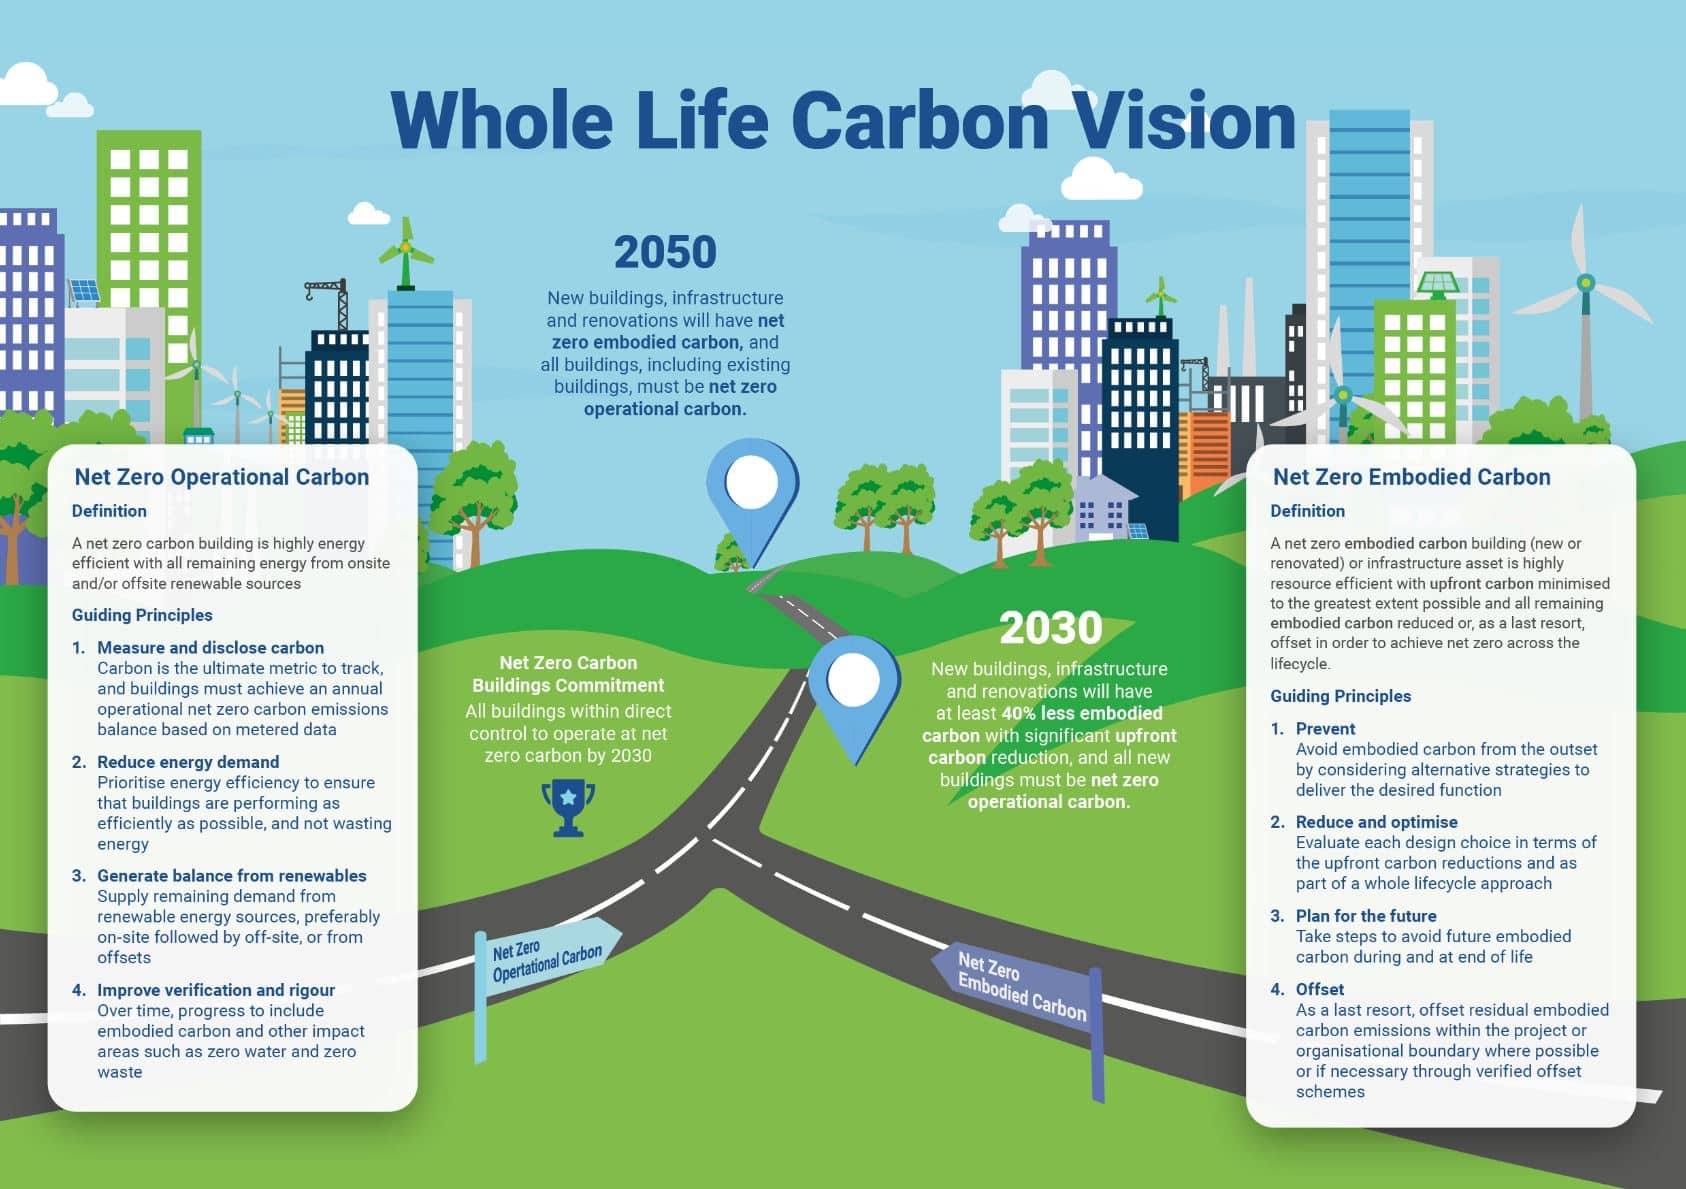 net-zero carbon vision